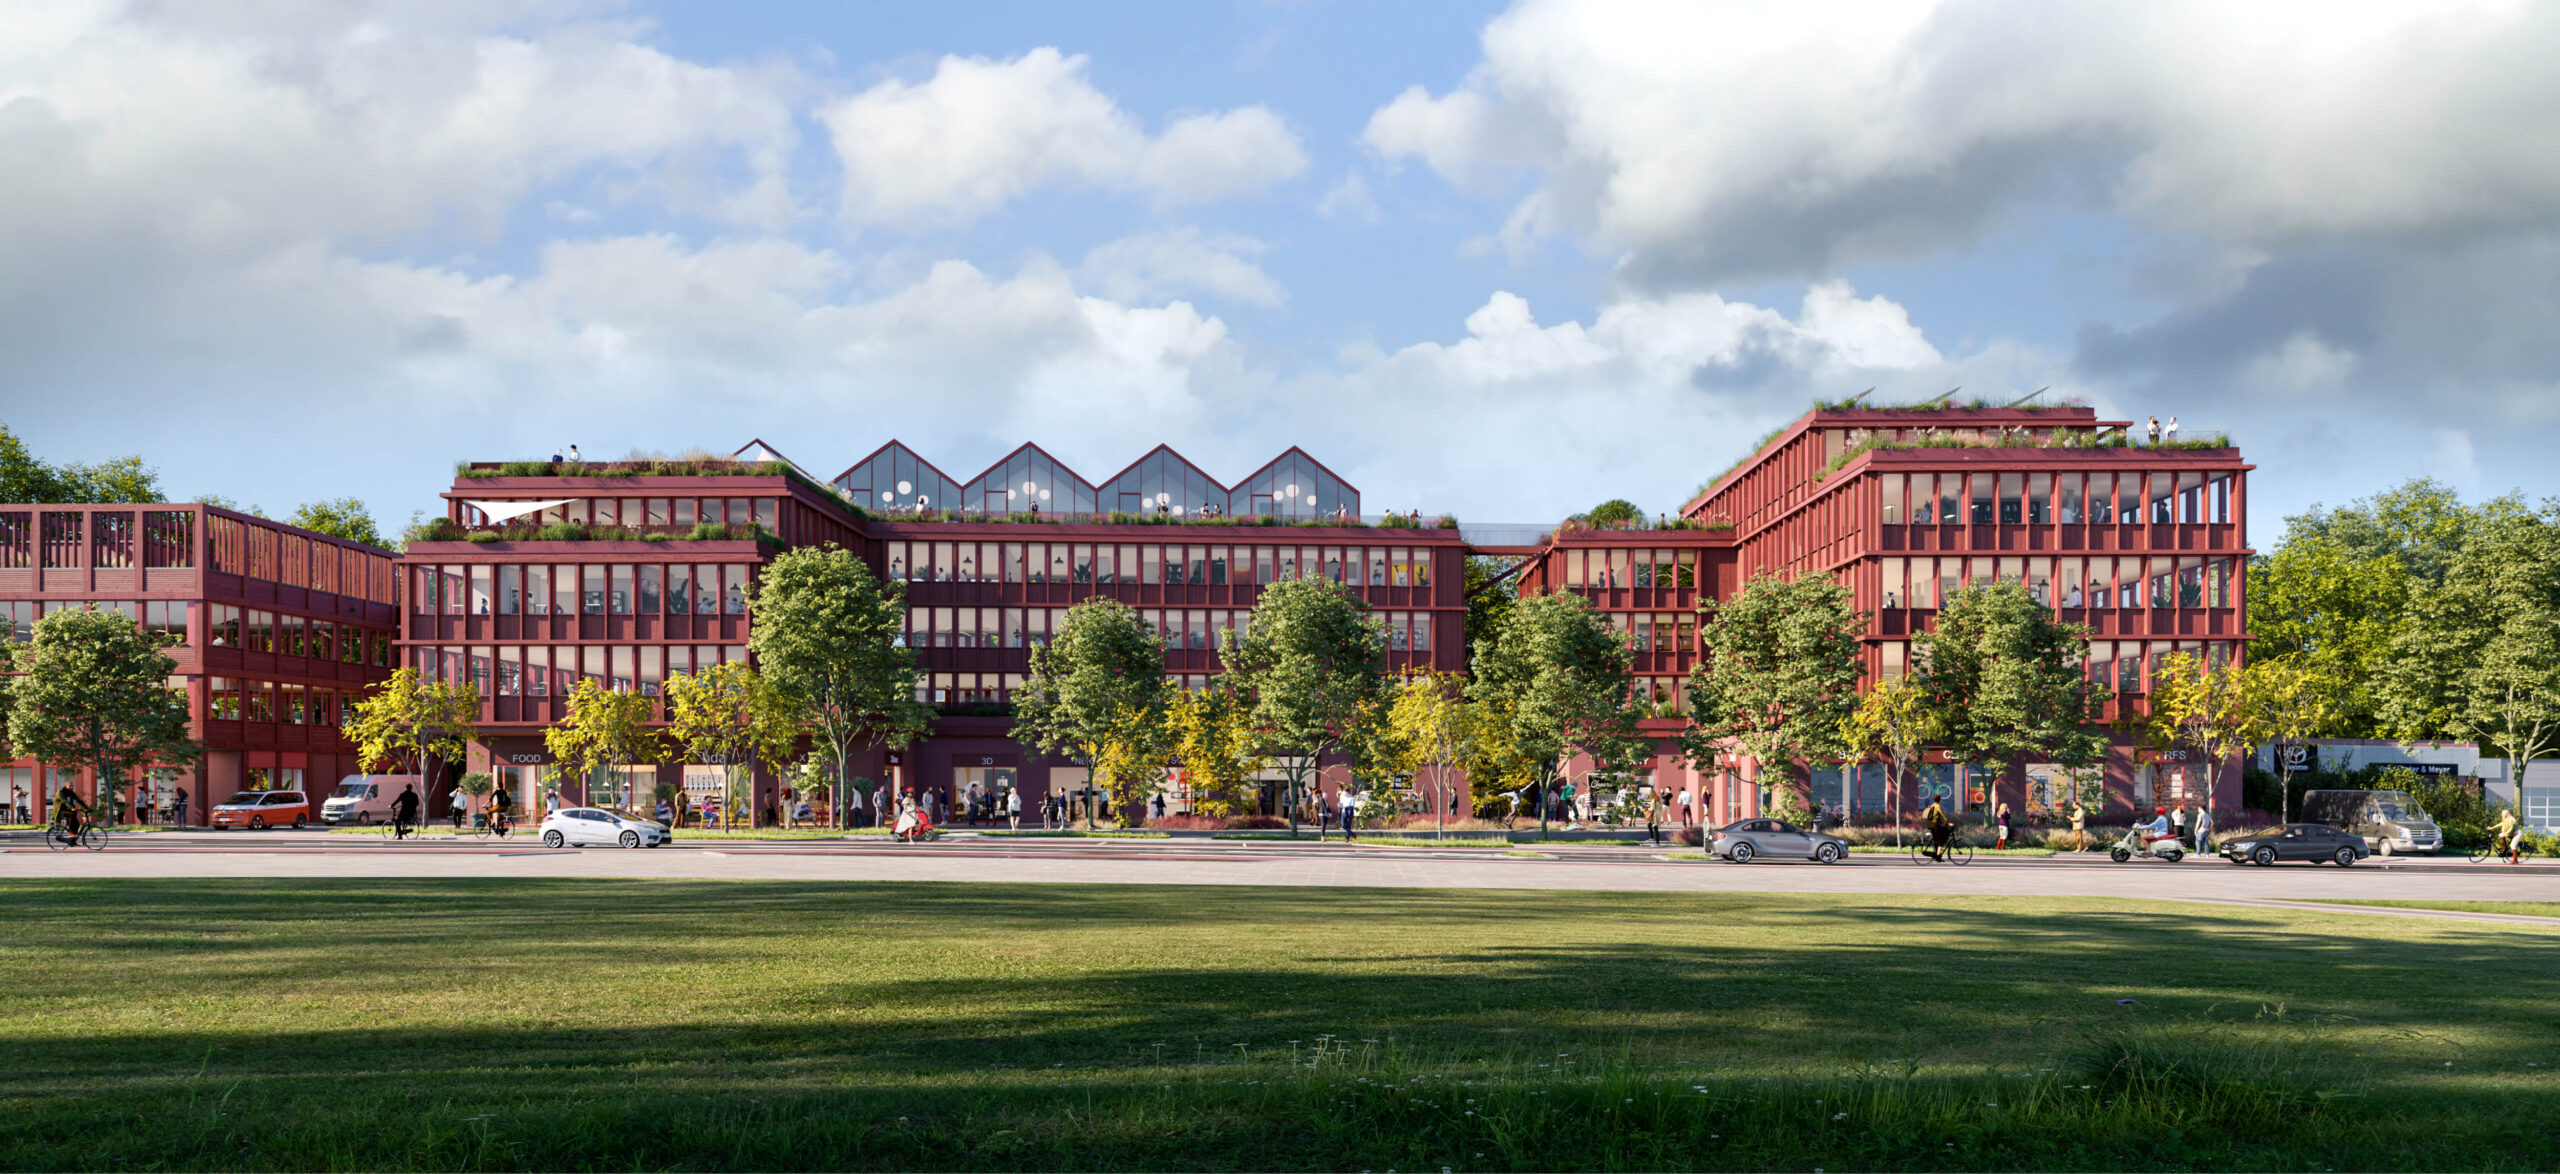 5-Quartiersplatz-Campus-Holzhybrid